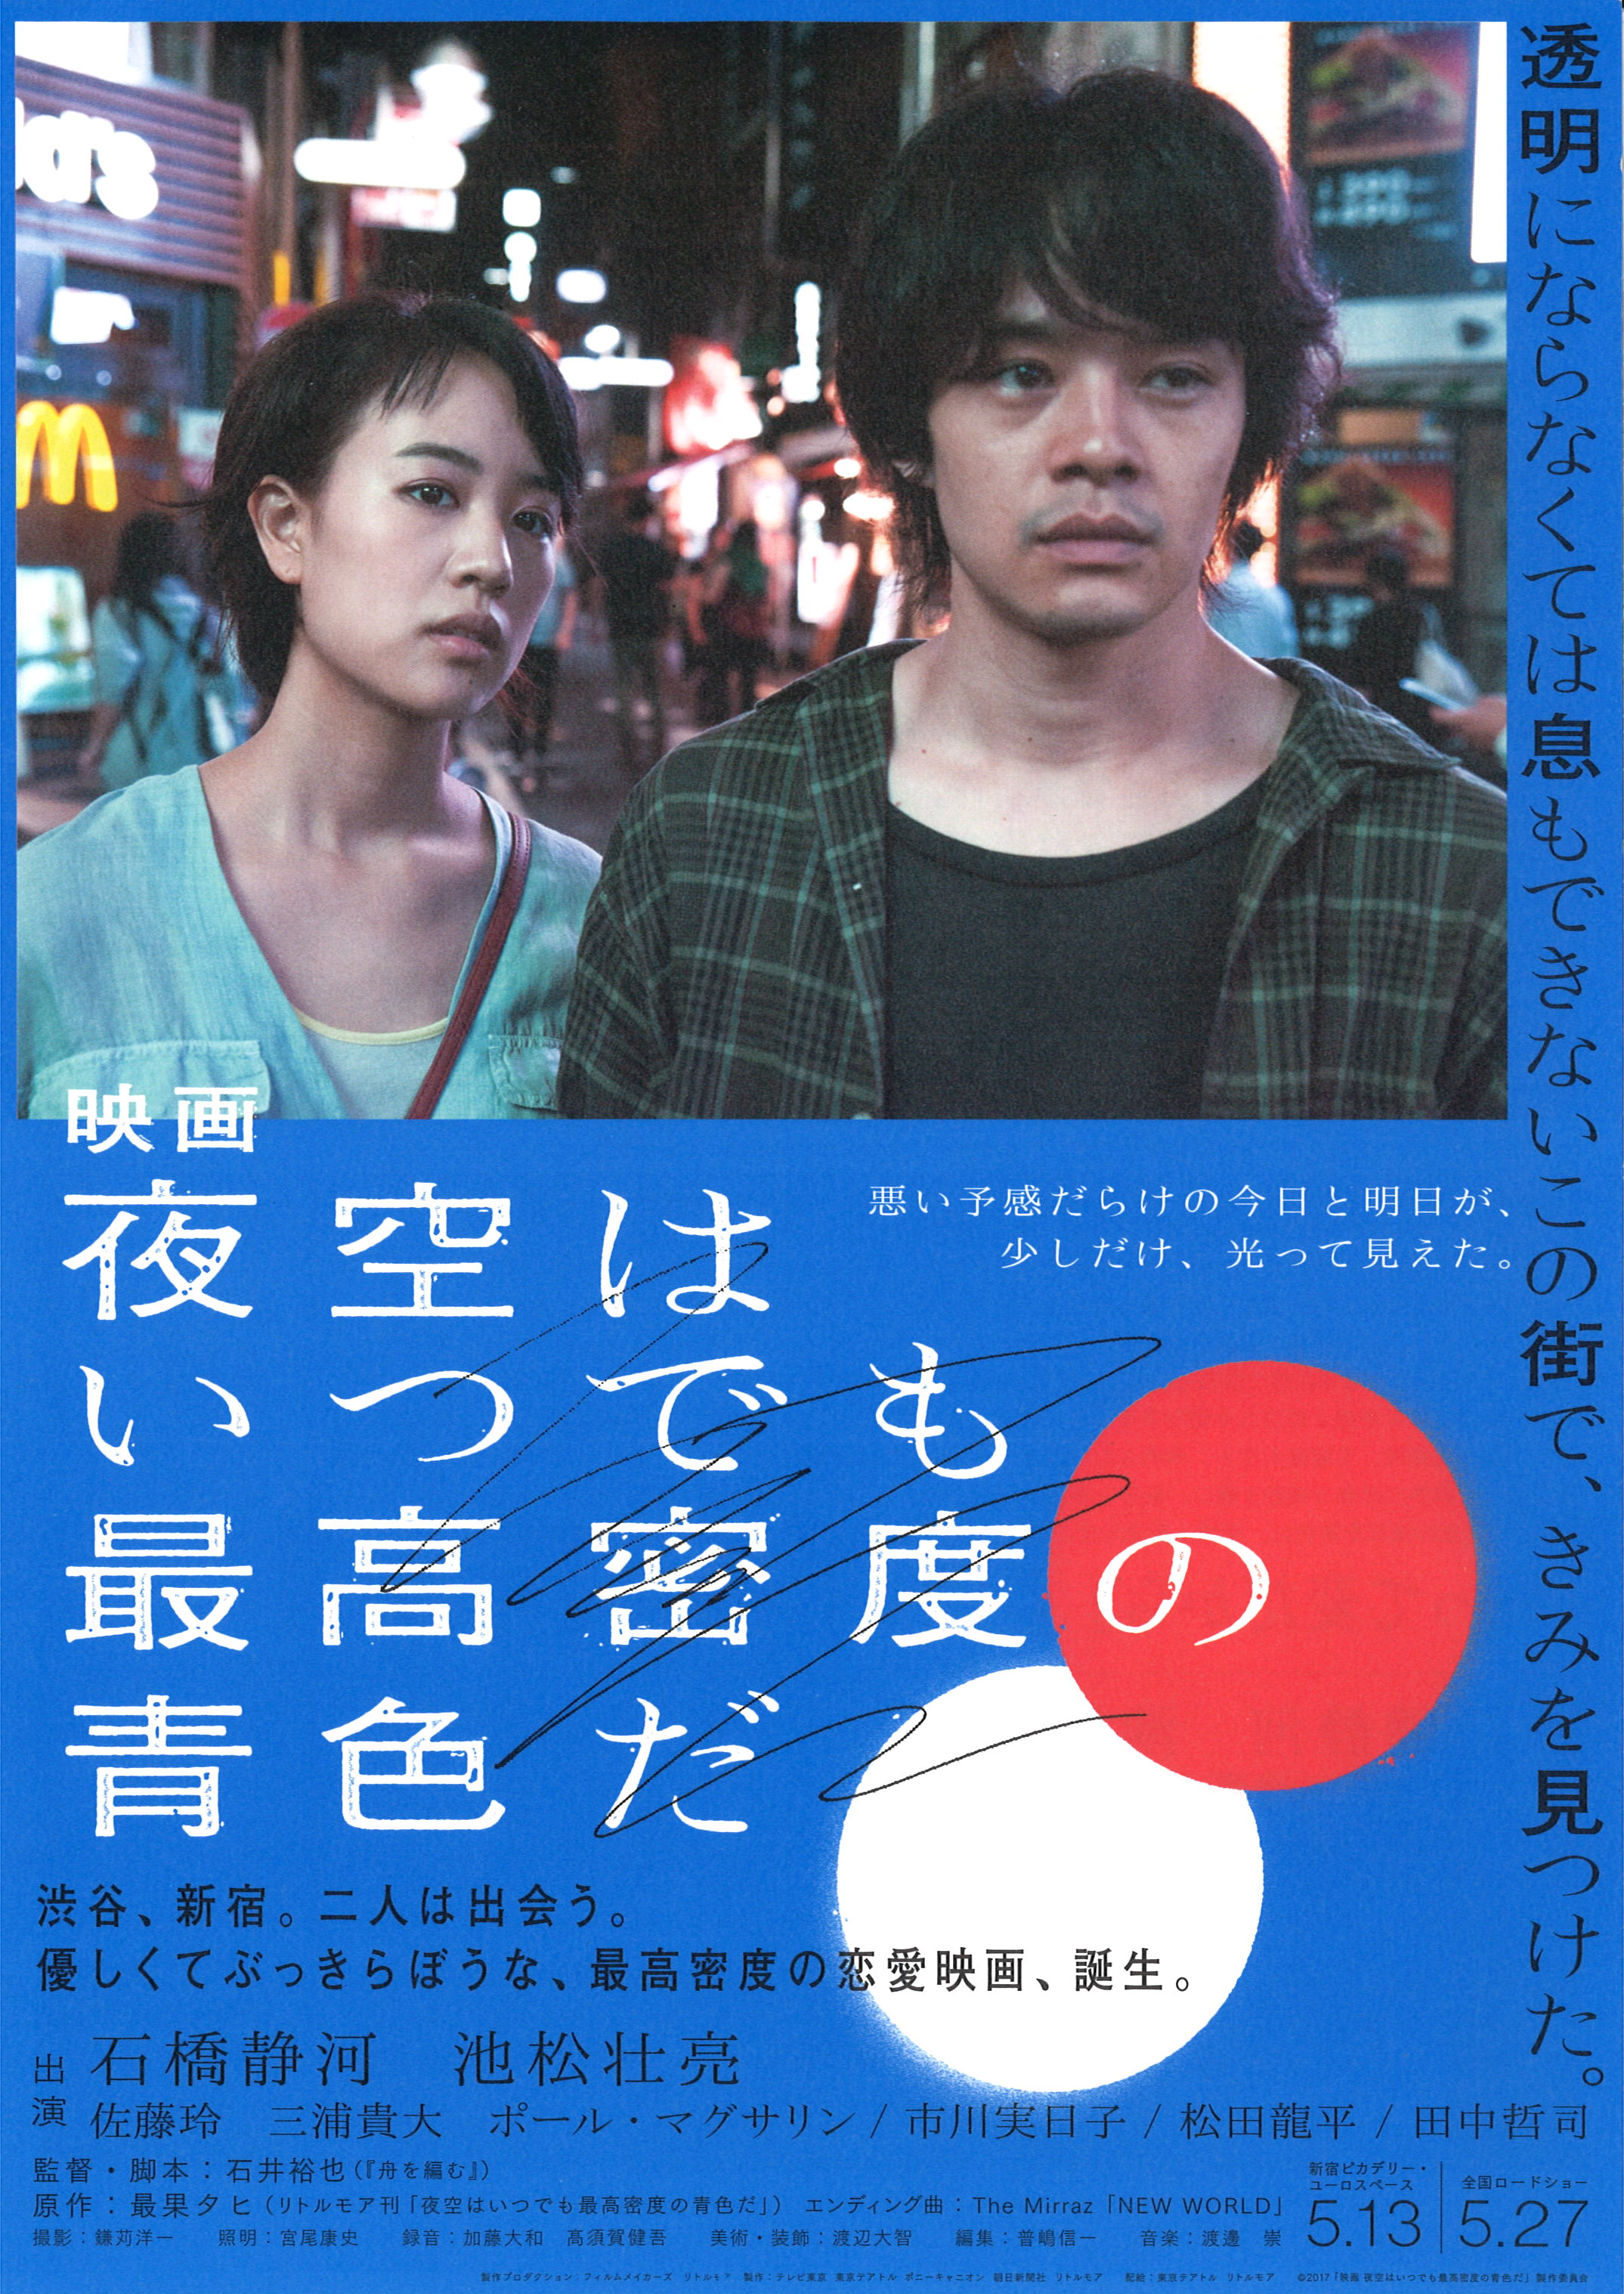 7 31 月 ネタバレ映画茶会 映画 夜空はいつでも最高密度の青色だ 新潟 市民映画館 シネ ウインド